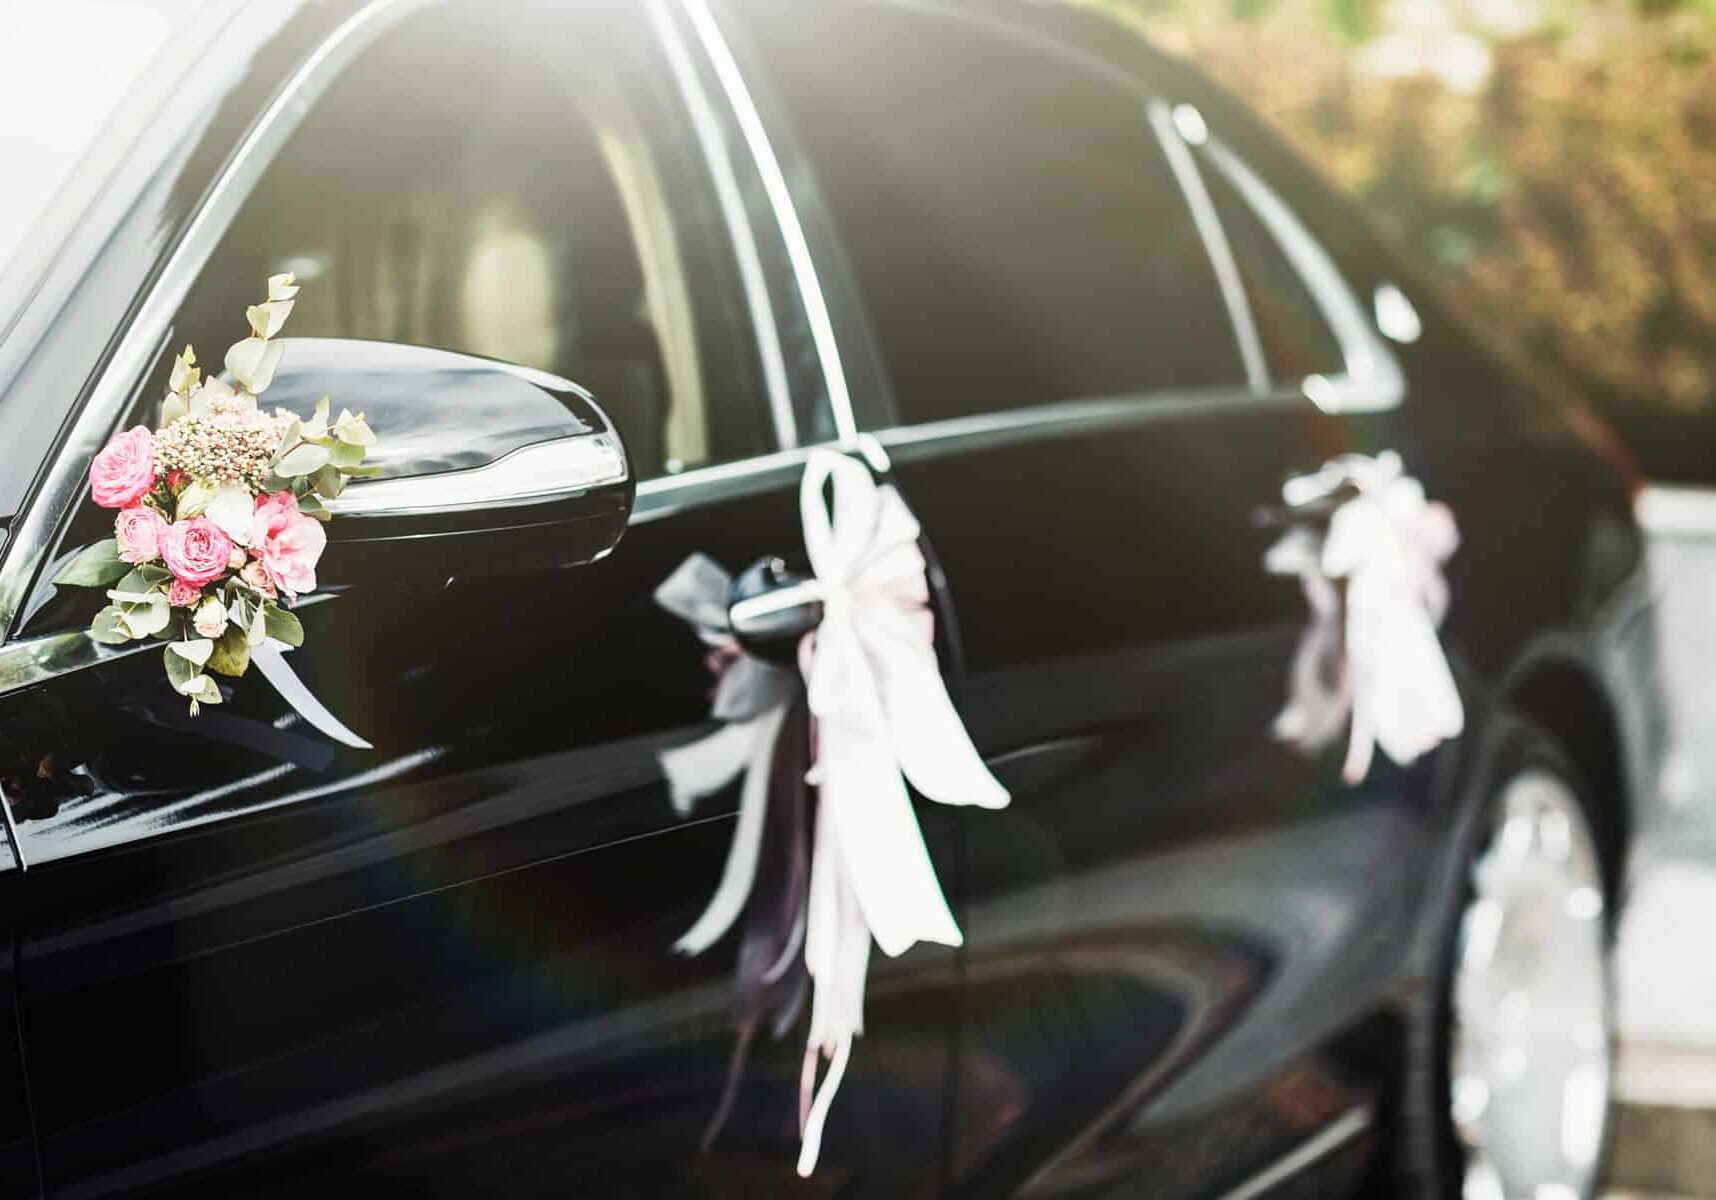 Decorated wedding car